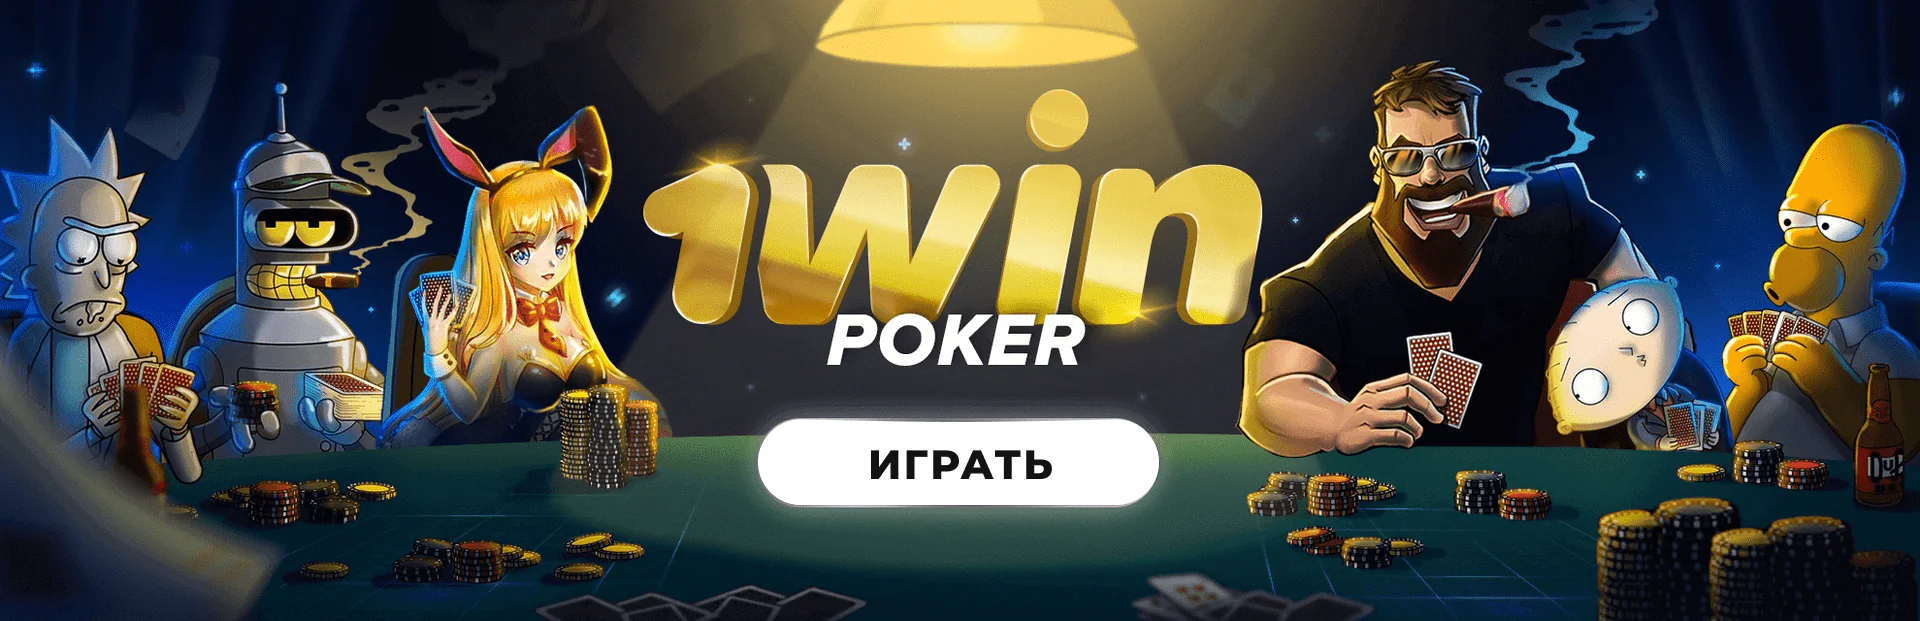 UP Games производитель игр в казино 1вин Украина 🏆